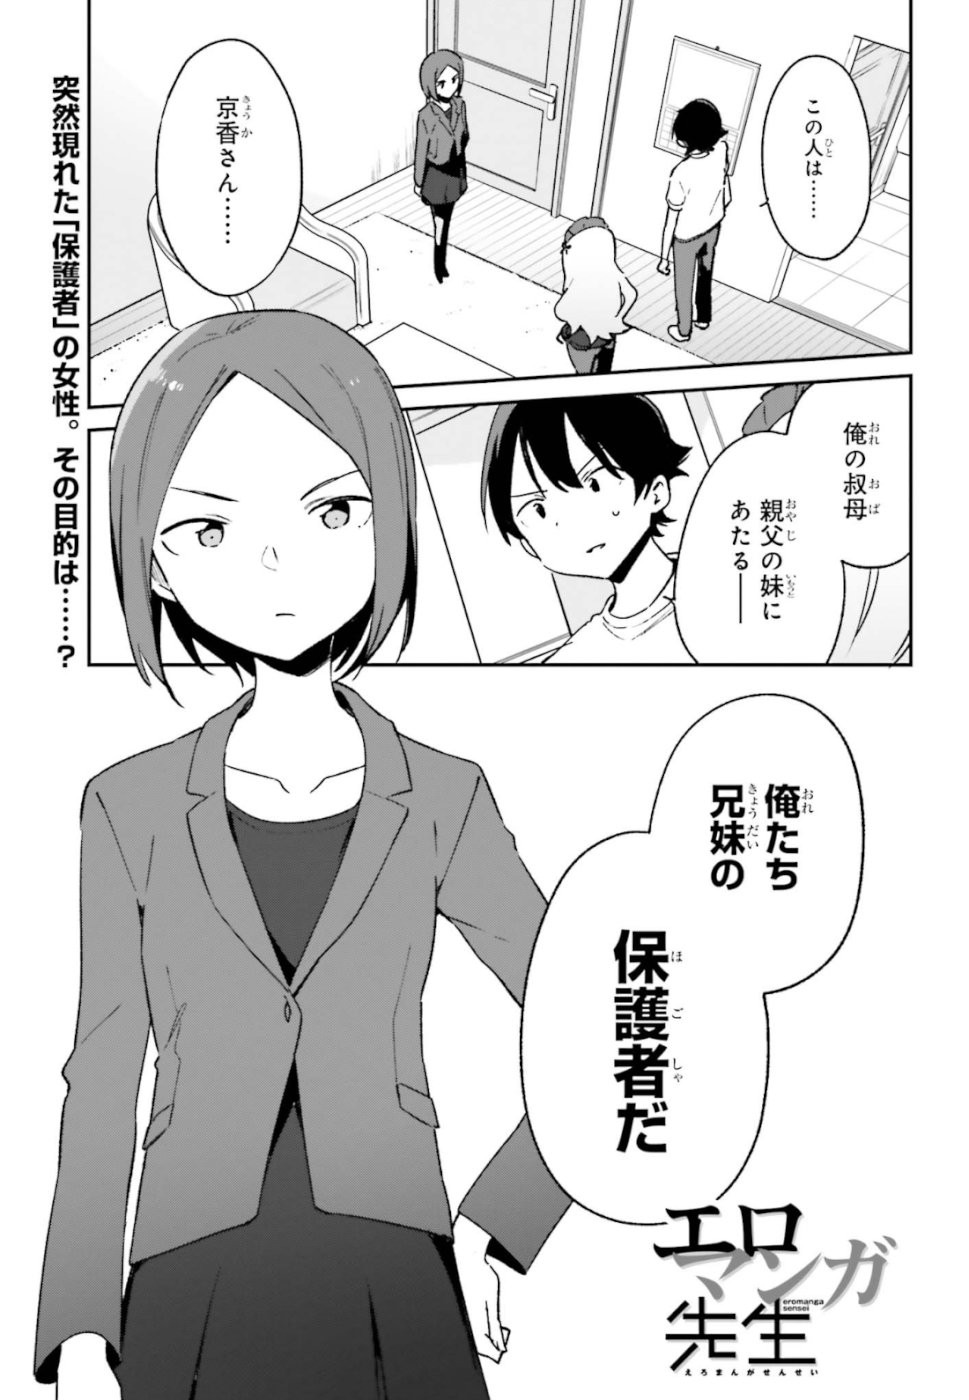 Ero Manga Sensei - Chapter 59 - Page 1